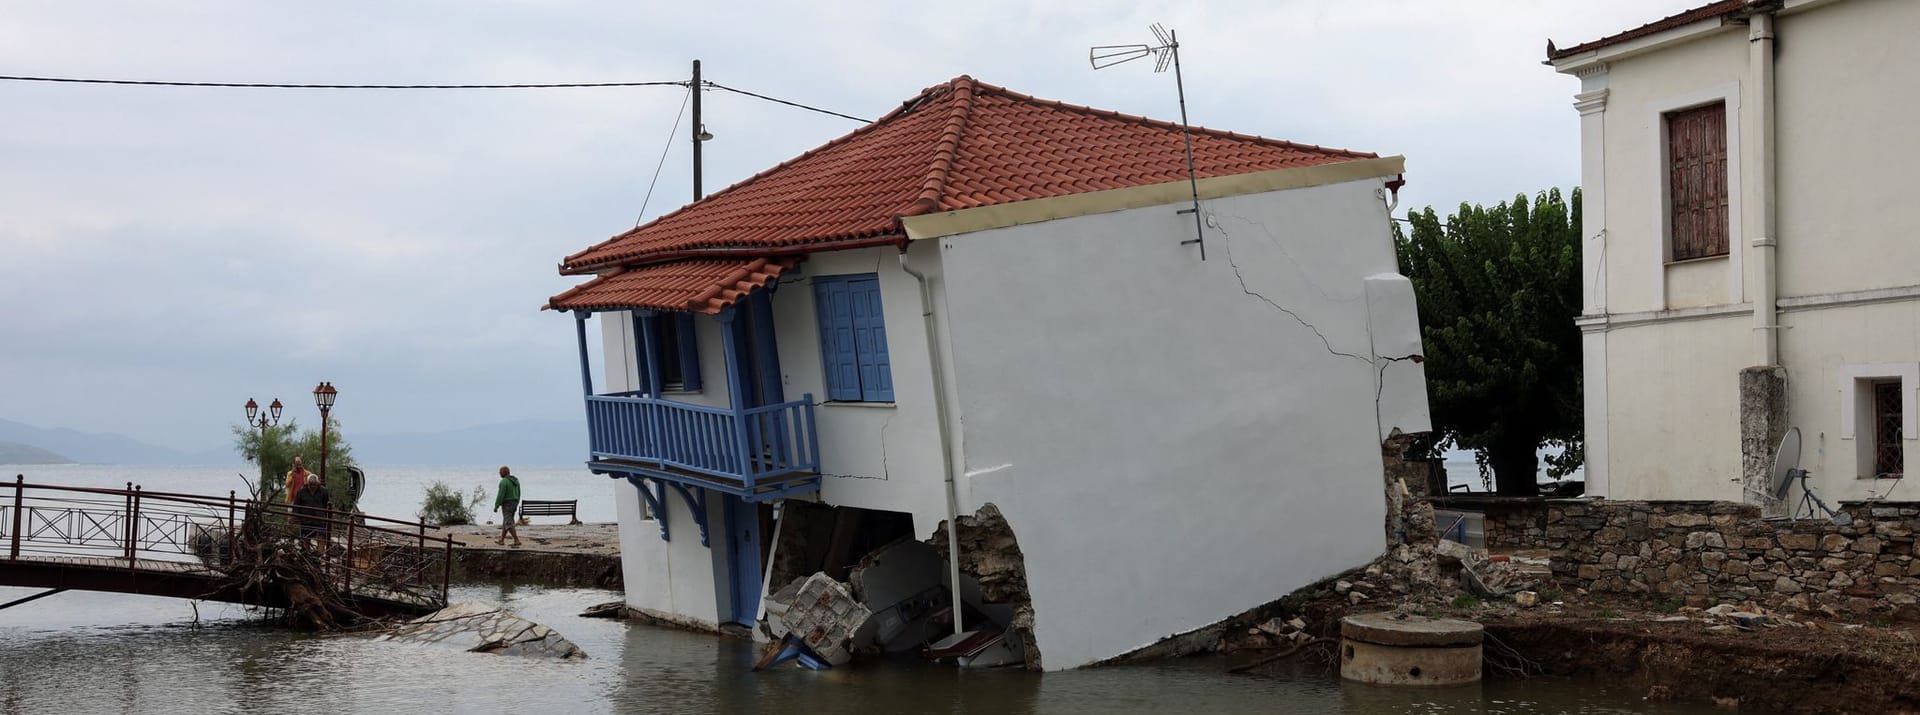 Horto in Griechenland: Das Unwetter hat ein Haus am Wasser zerstört.